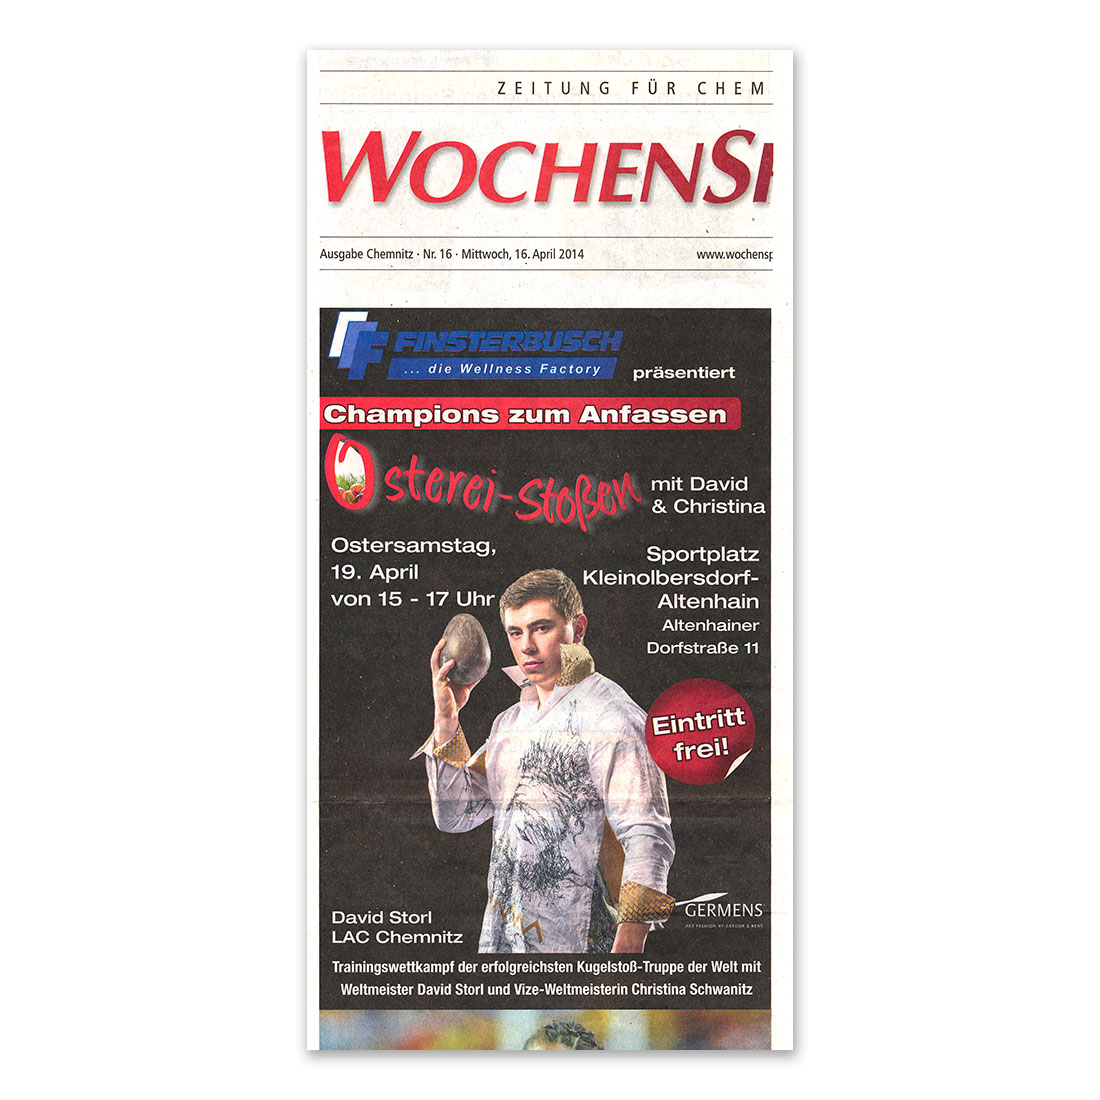 GERMENS artfashion - Wochenspiegel Chemnitz - 16.04.2014